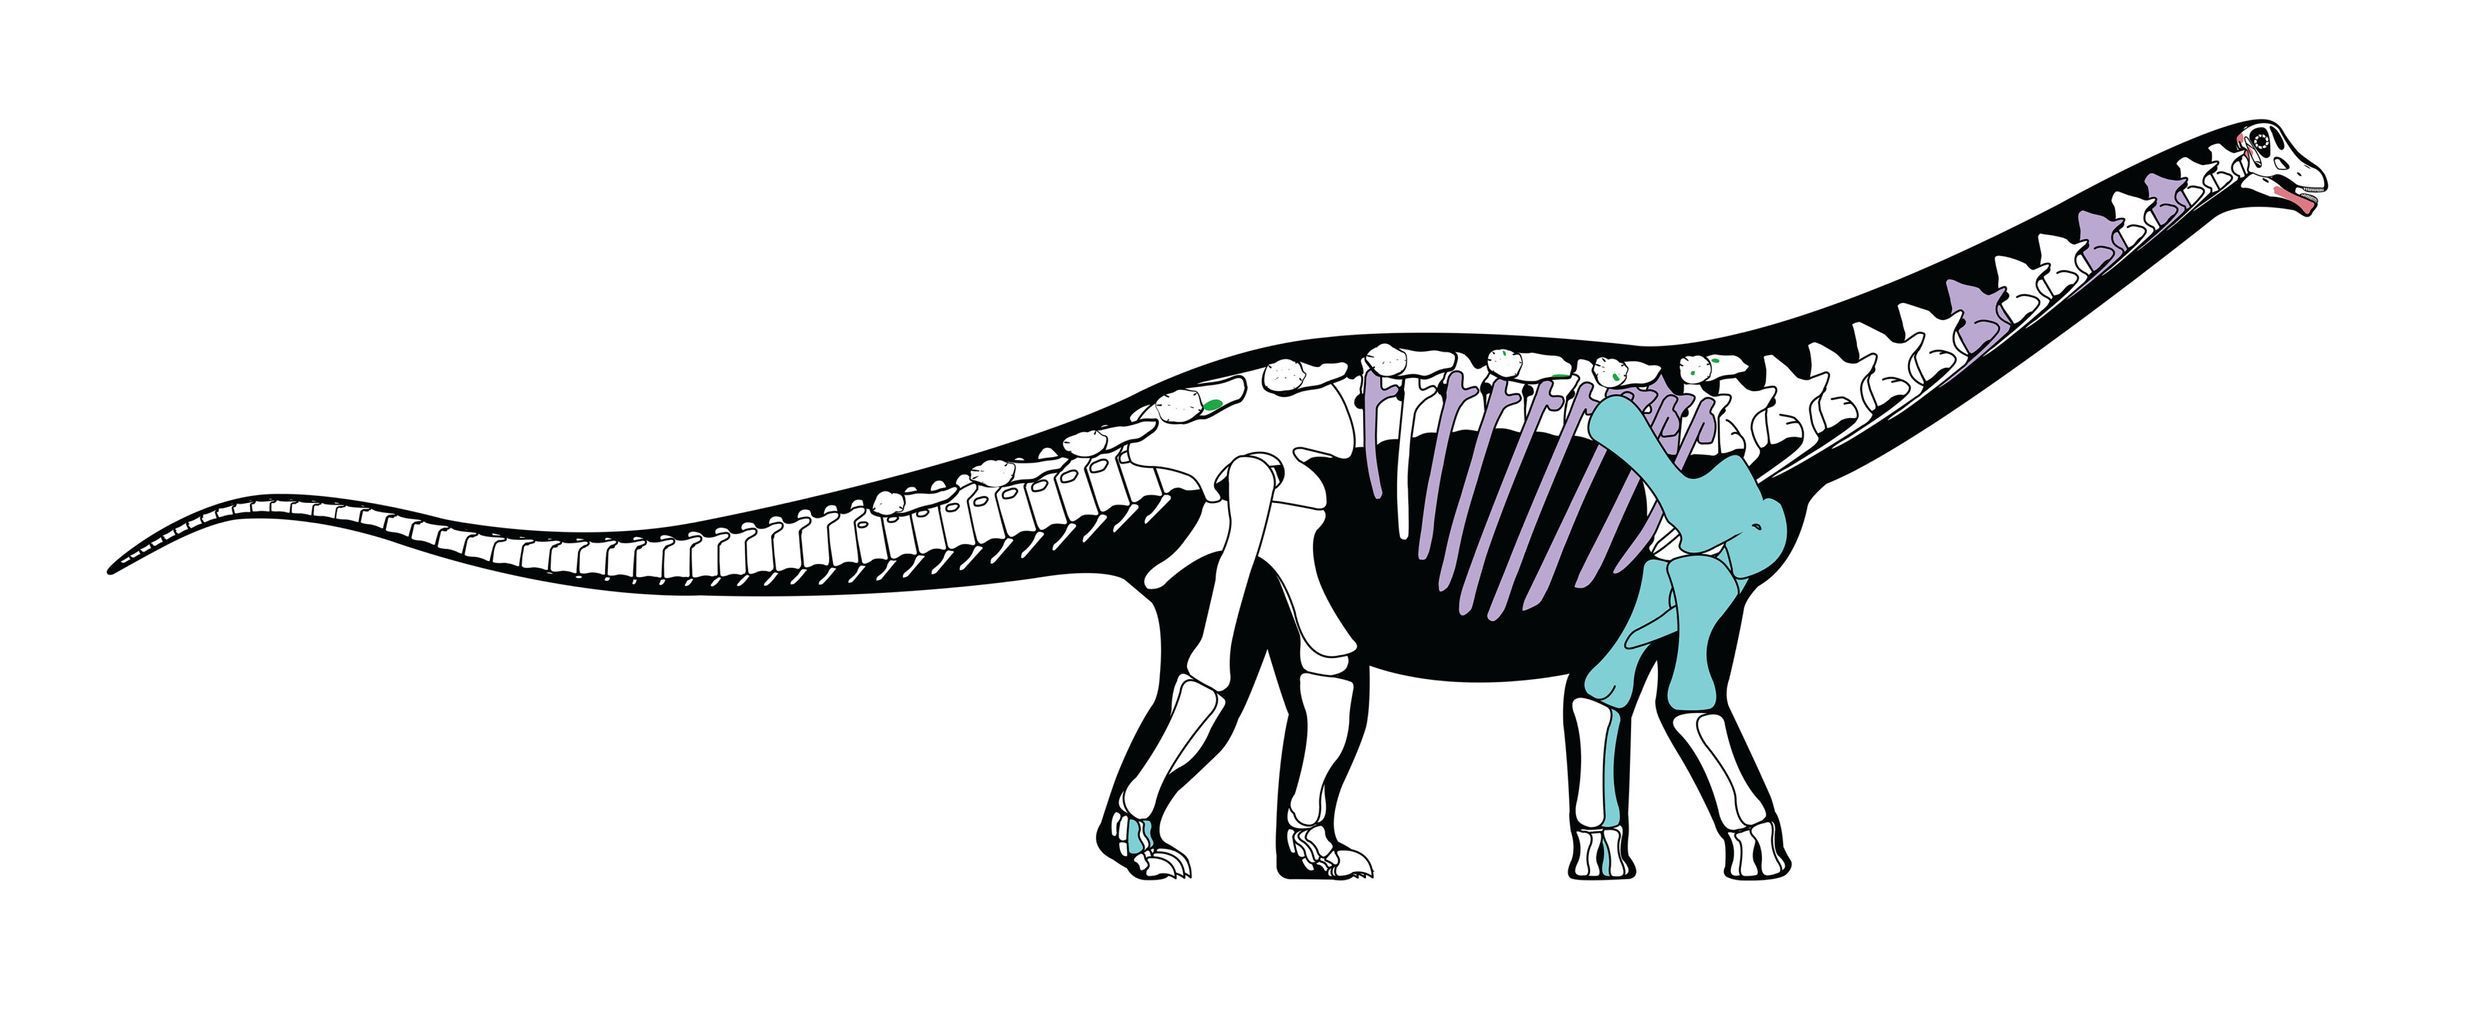 Mansourasaurus - nově objevený druh dinosaura